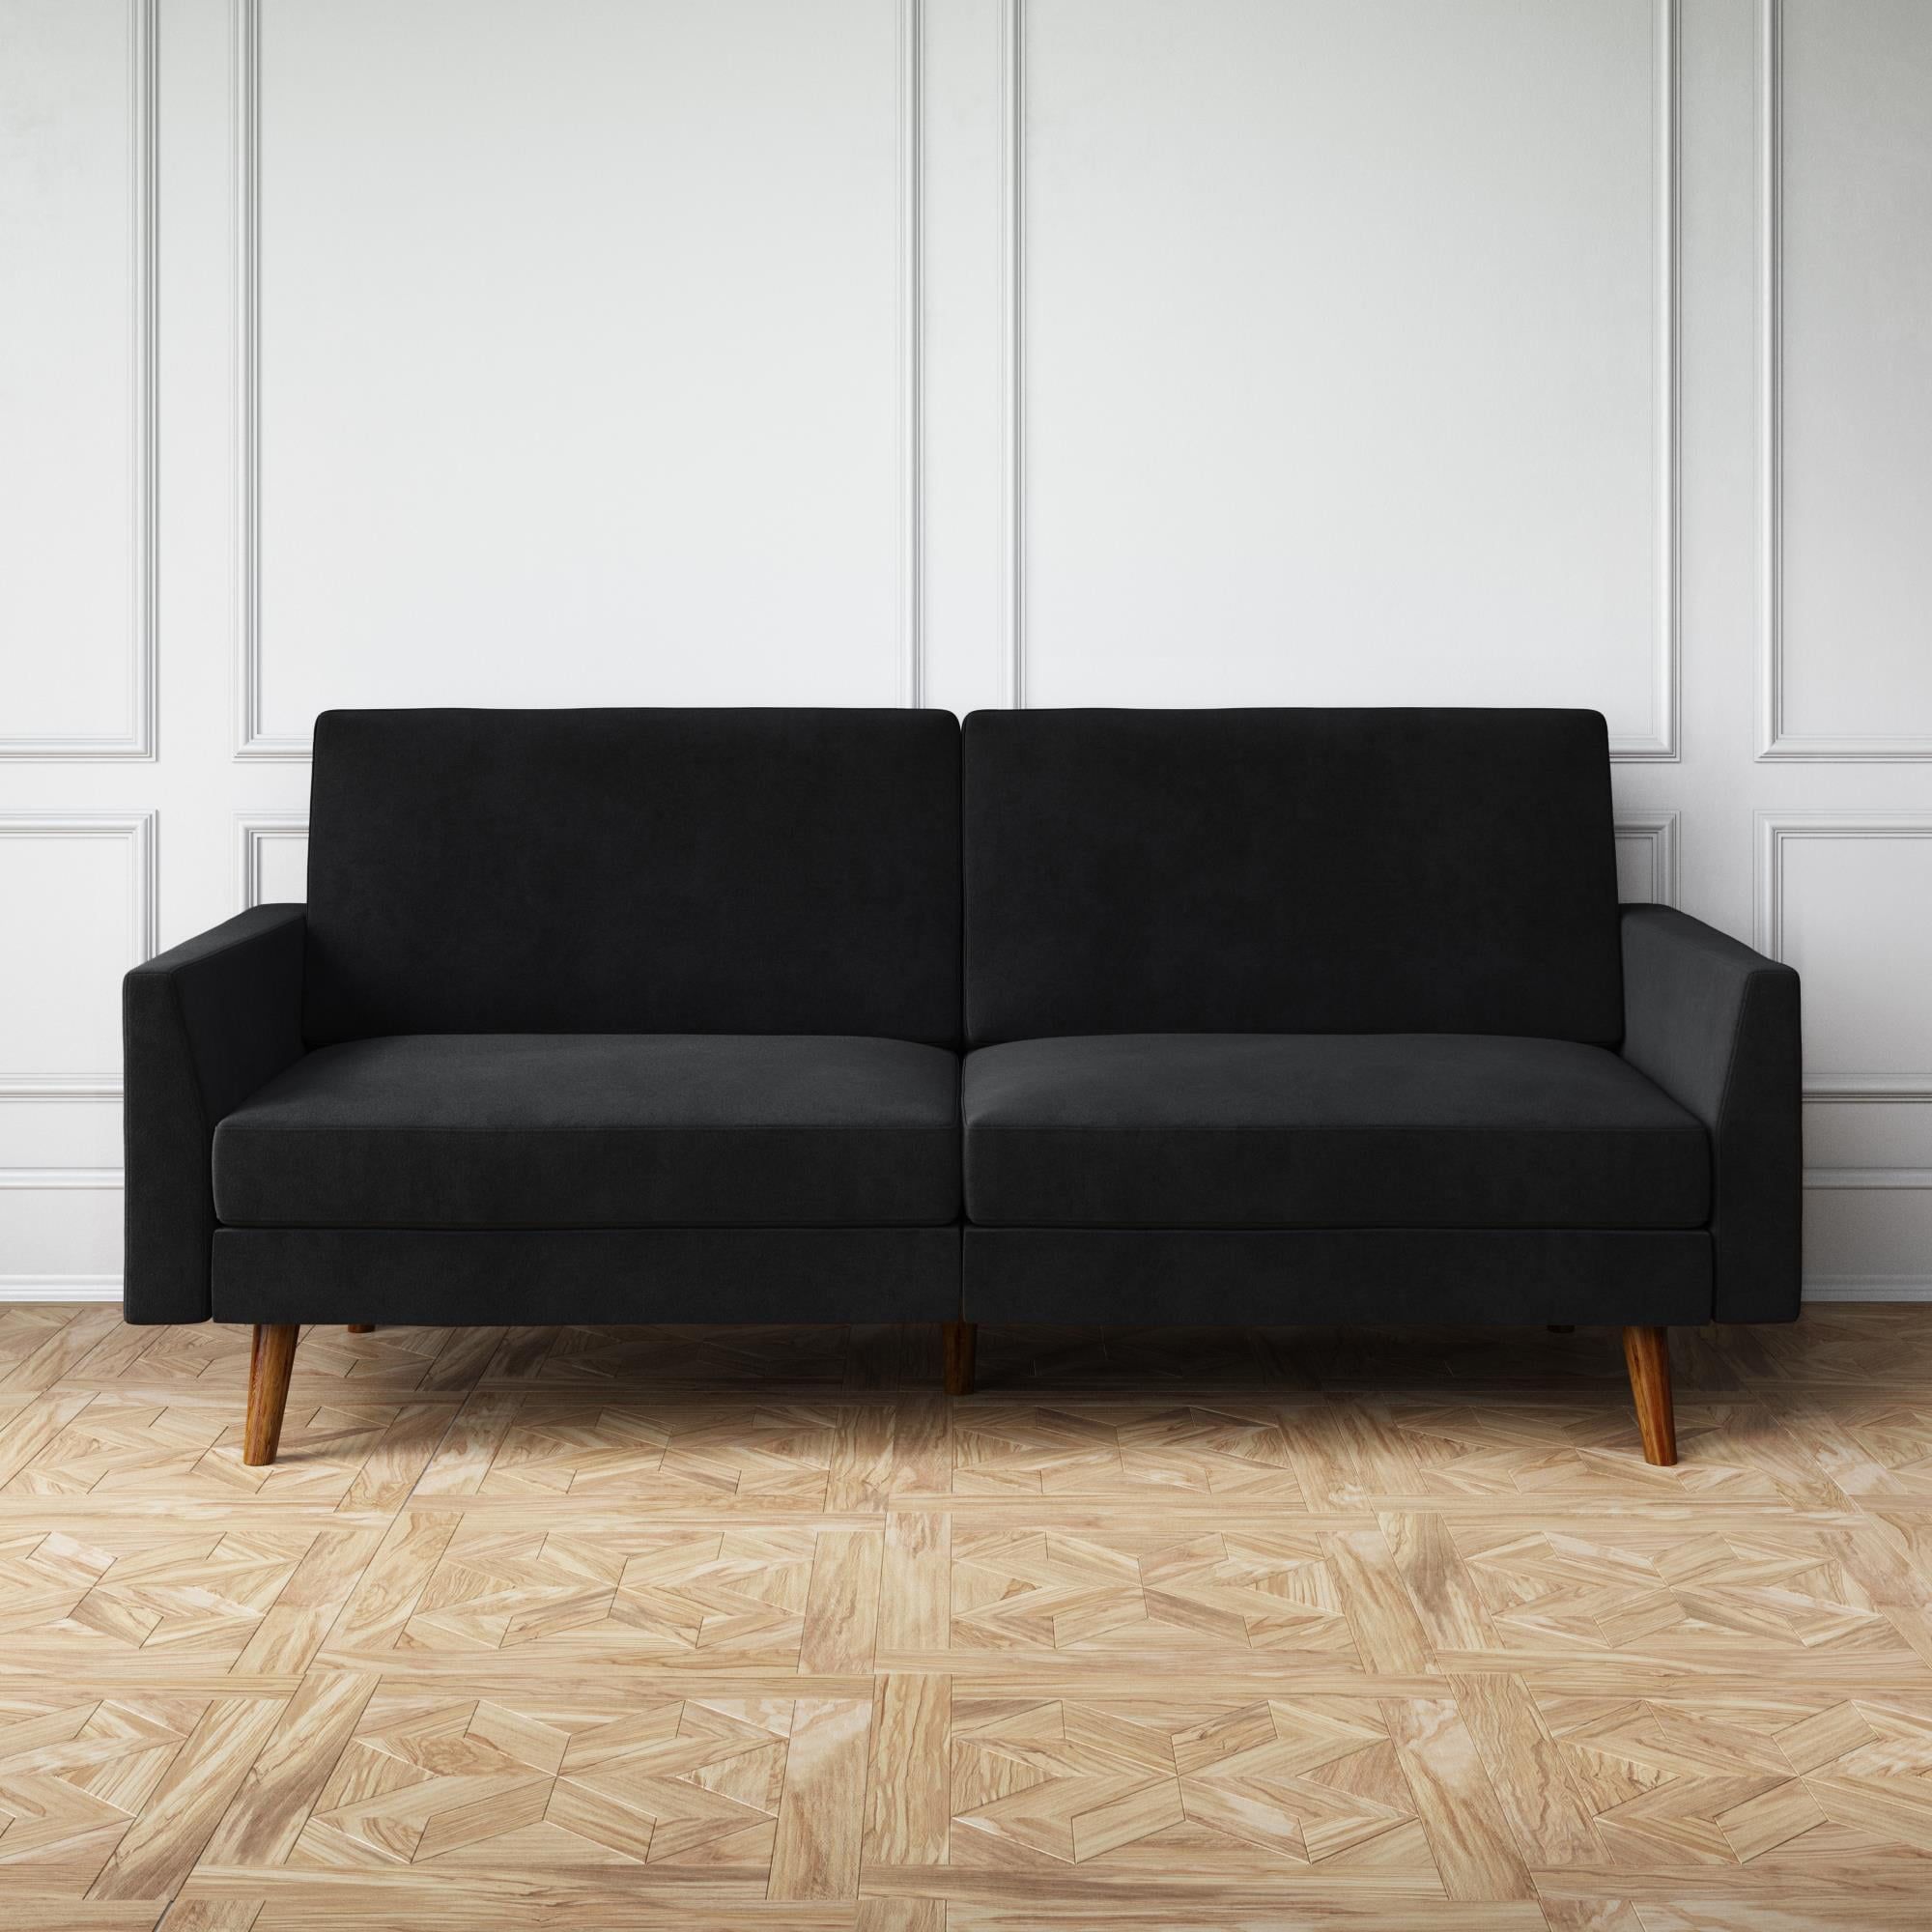 Dhp Jules Sofa Bed In Velvet, Black – Walmart For 2 Seater Black Velvet Sofa Beds (Gallery 4 of 20)